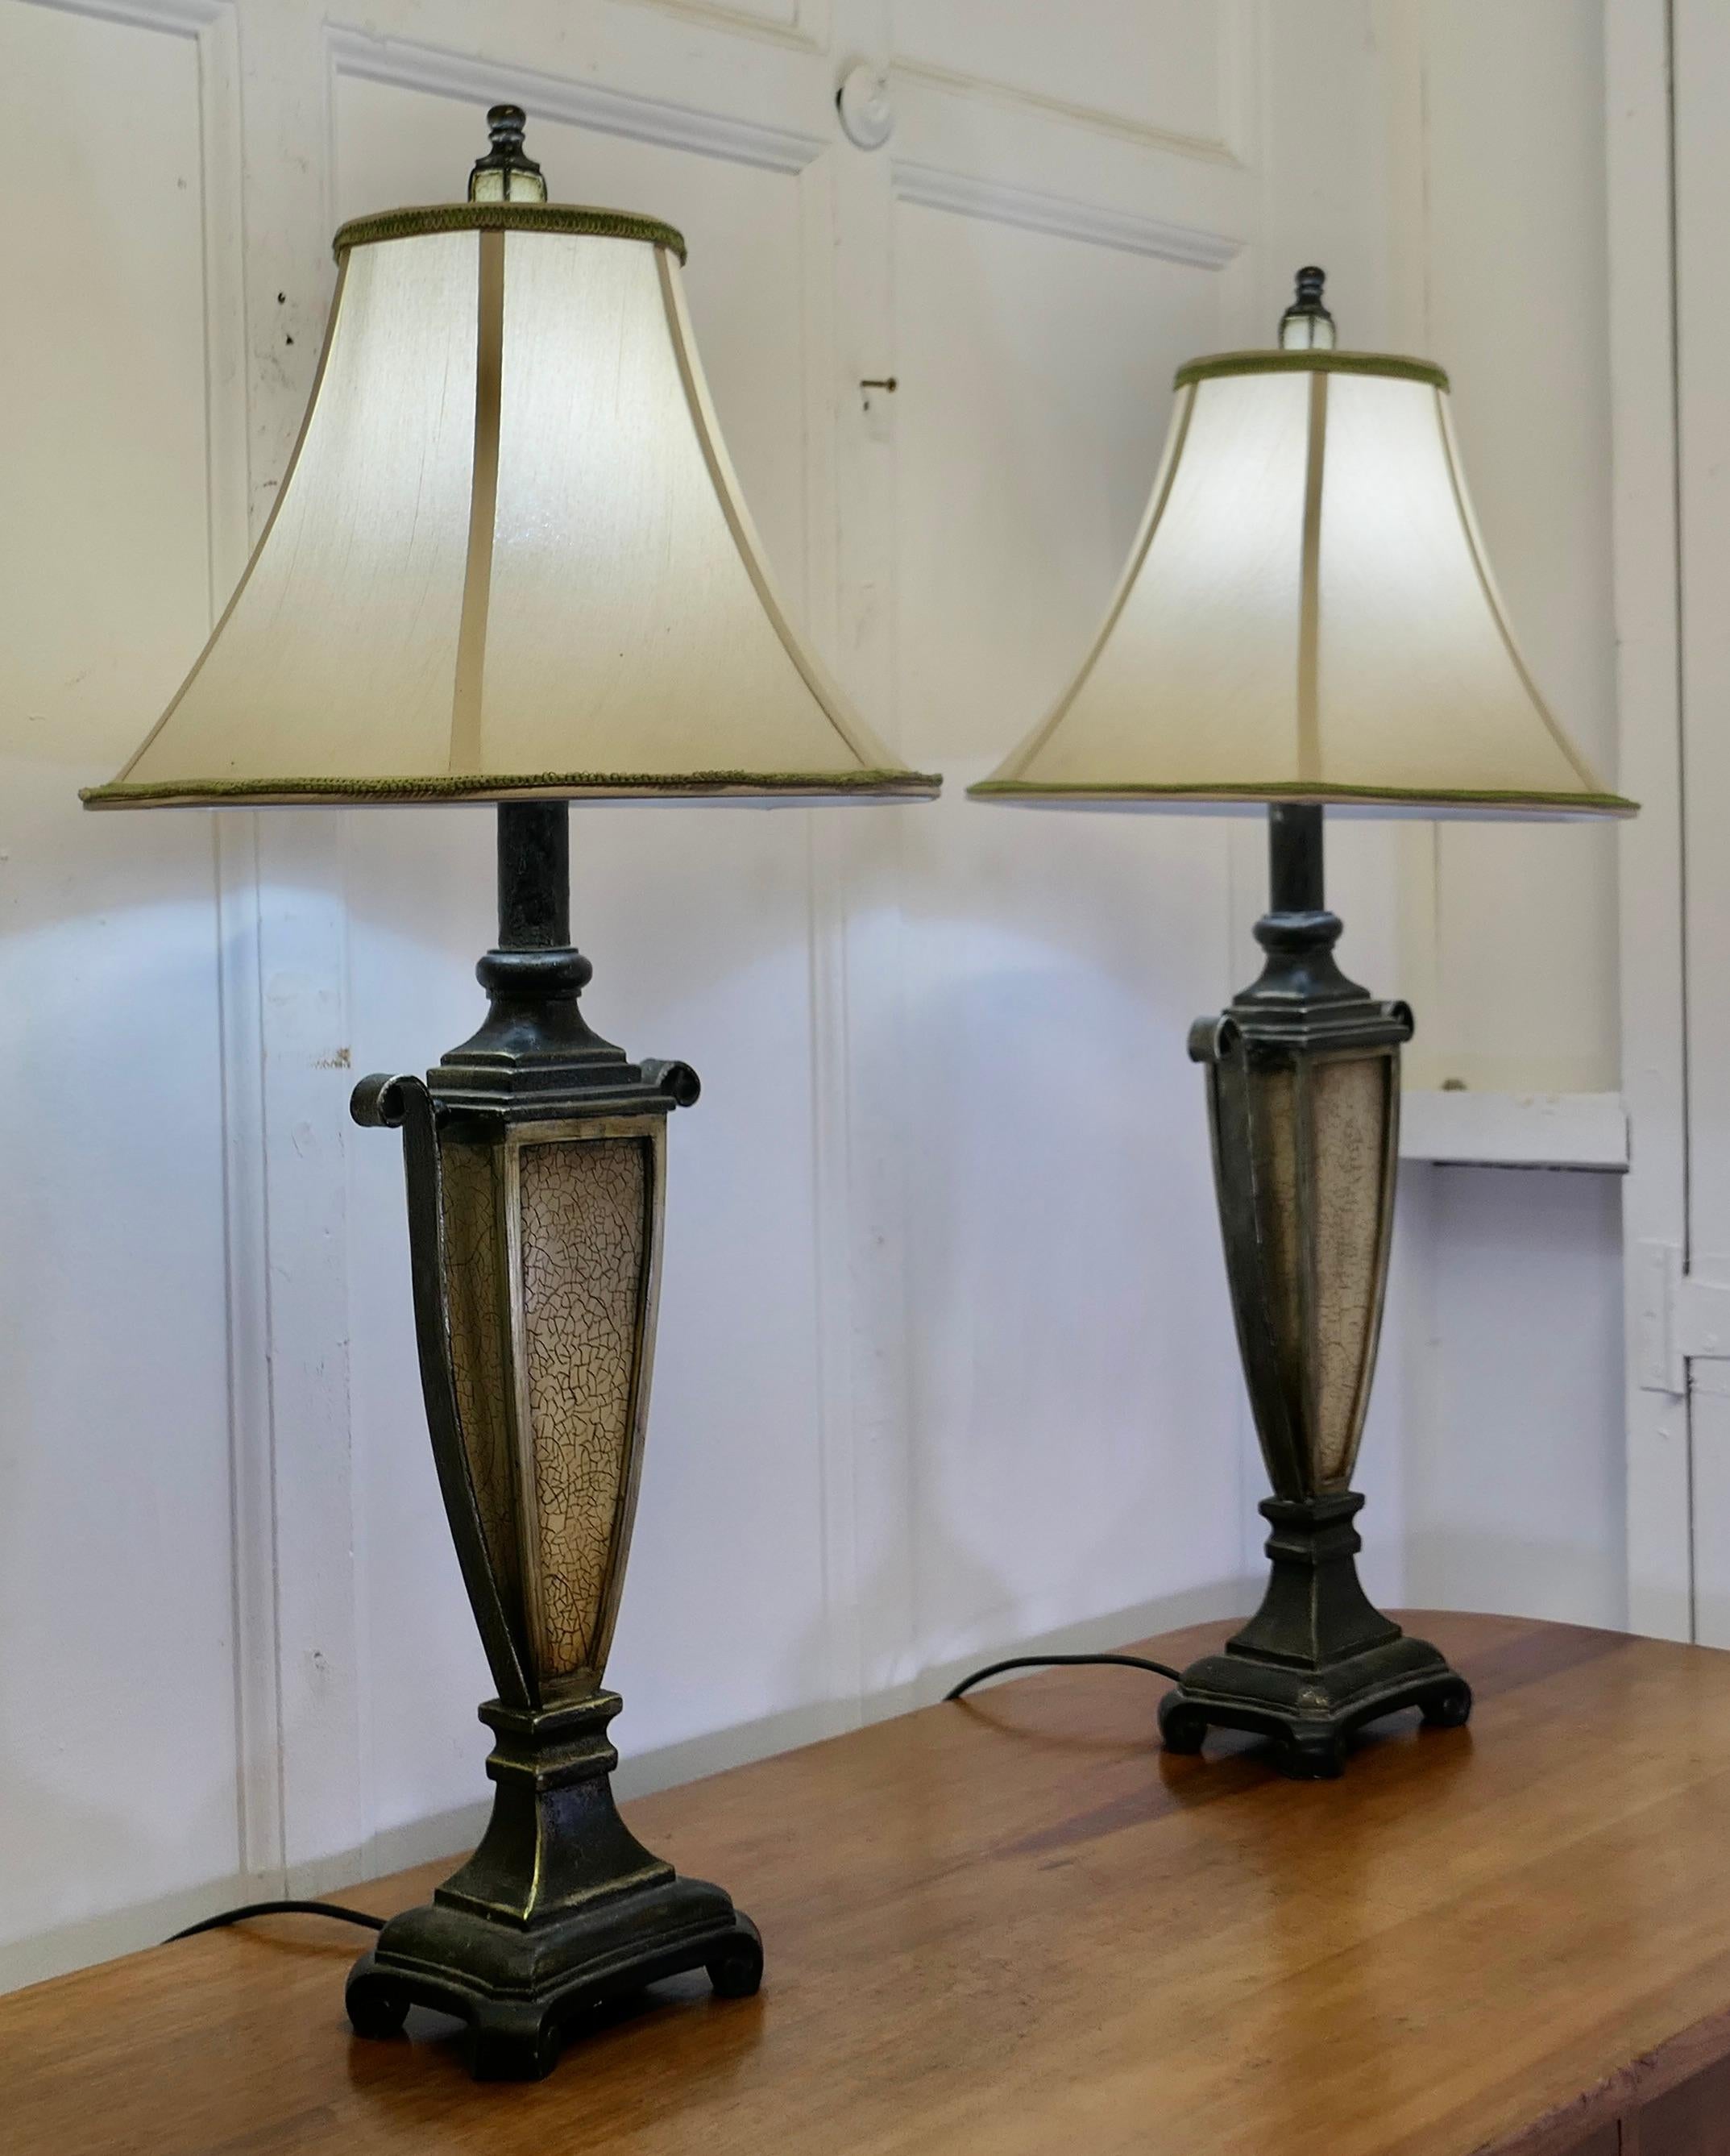 Composizione Coppia di lampade da tavolo in stile Art Decor   Un'emozionante coppia di lampade in vendita